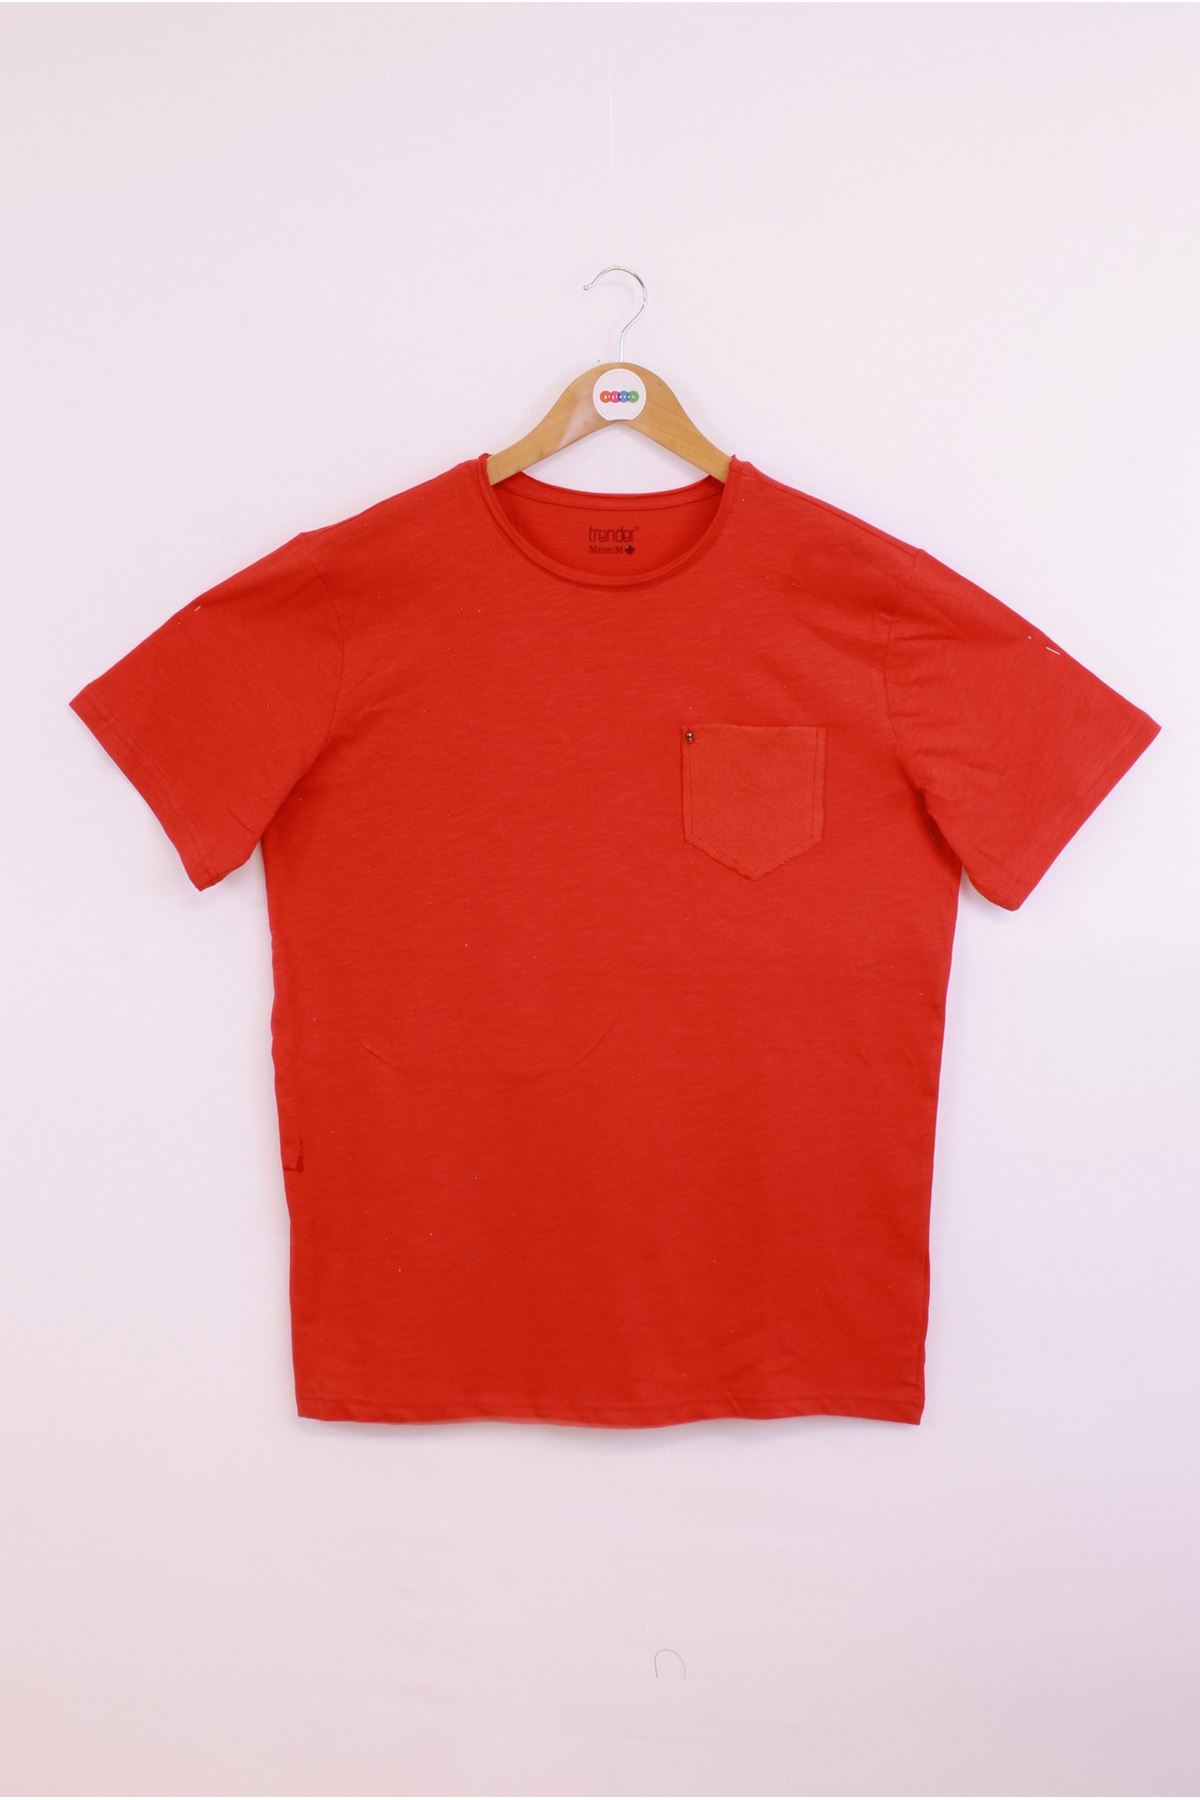 Giyinsen Erkek Kırmızı Tişört - 23YL71L58003